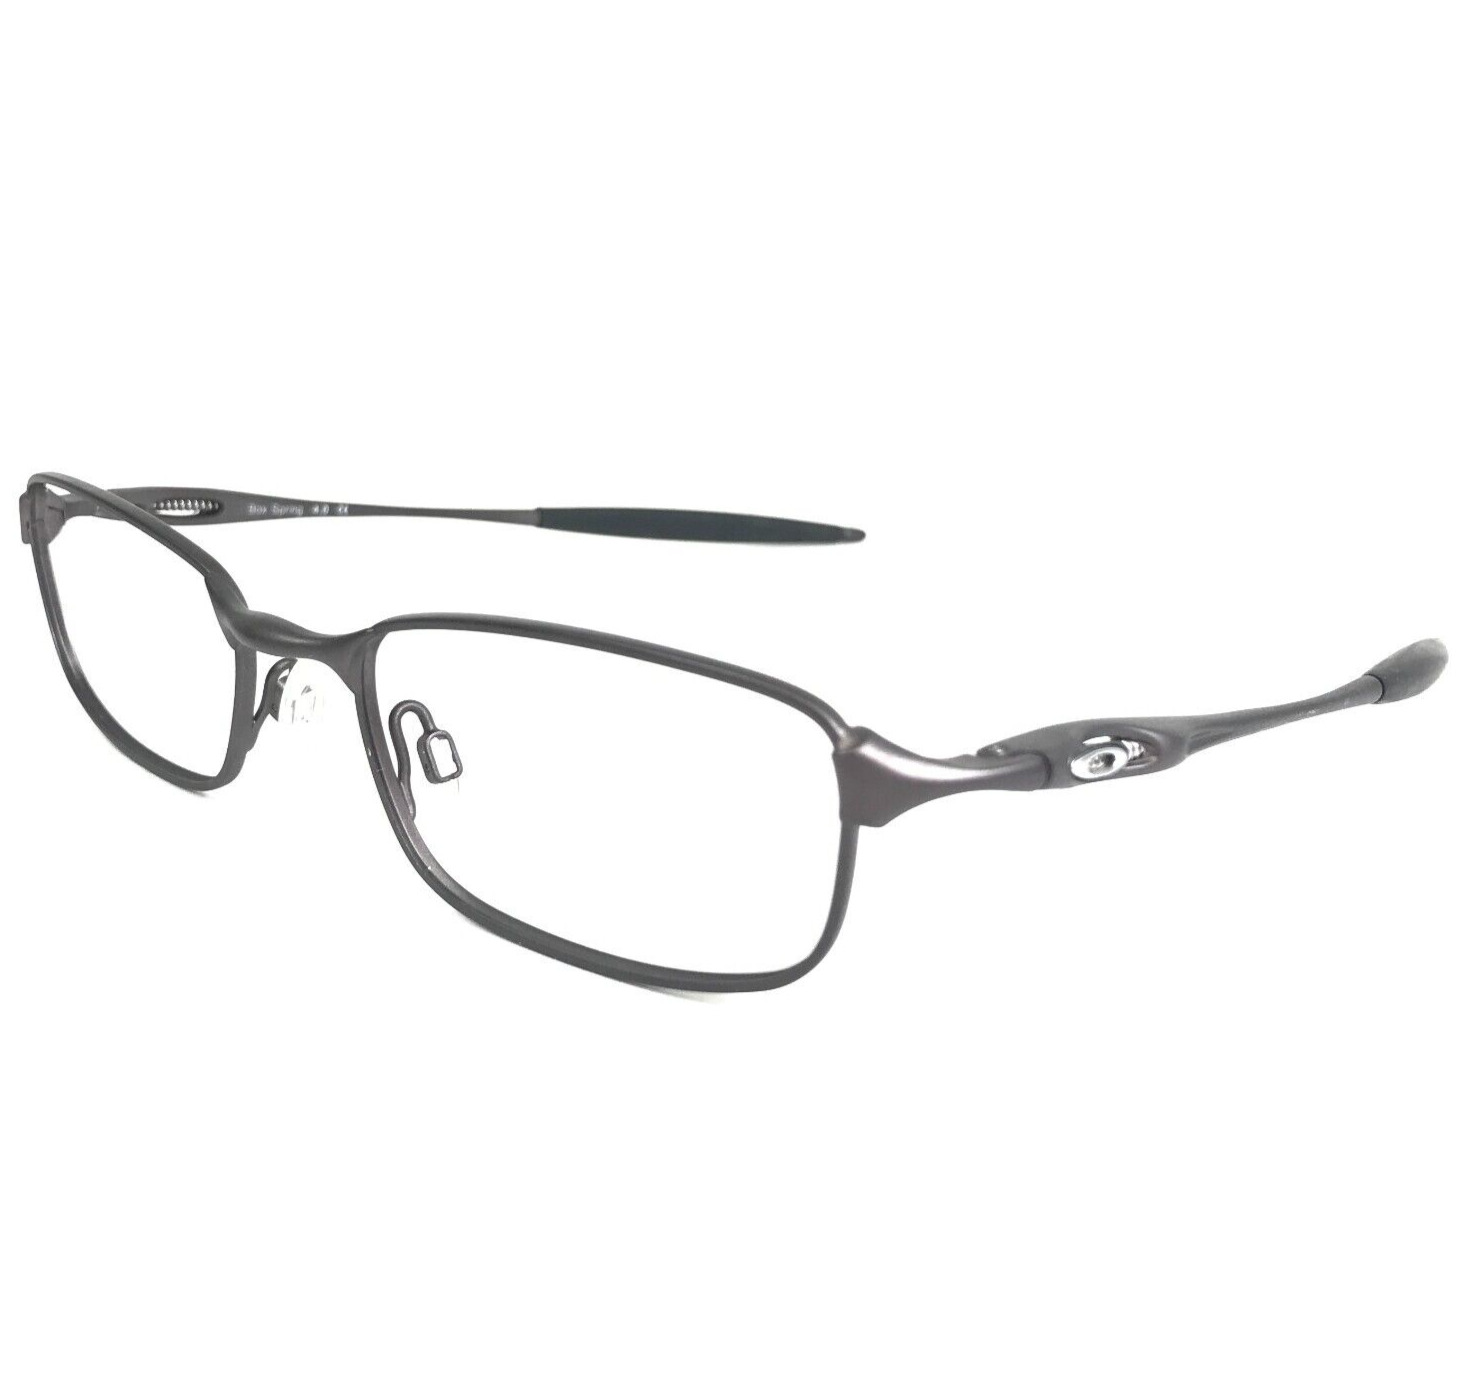 Vintage Oakley Eyeglasses Frames Box Spring 4.0 Pewter 11-751 51-19-142